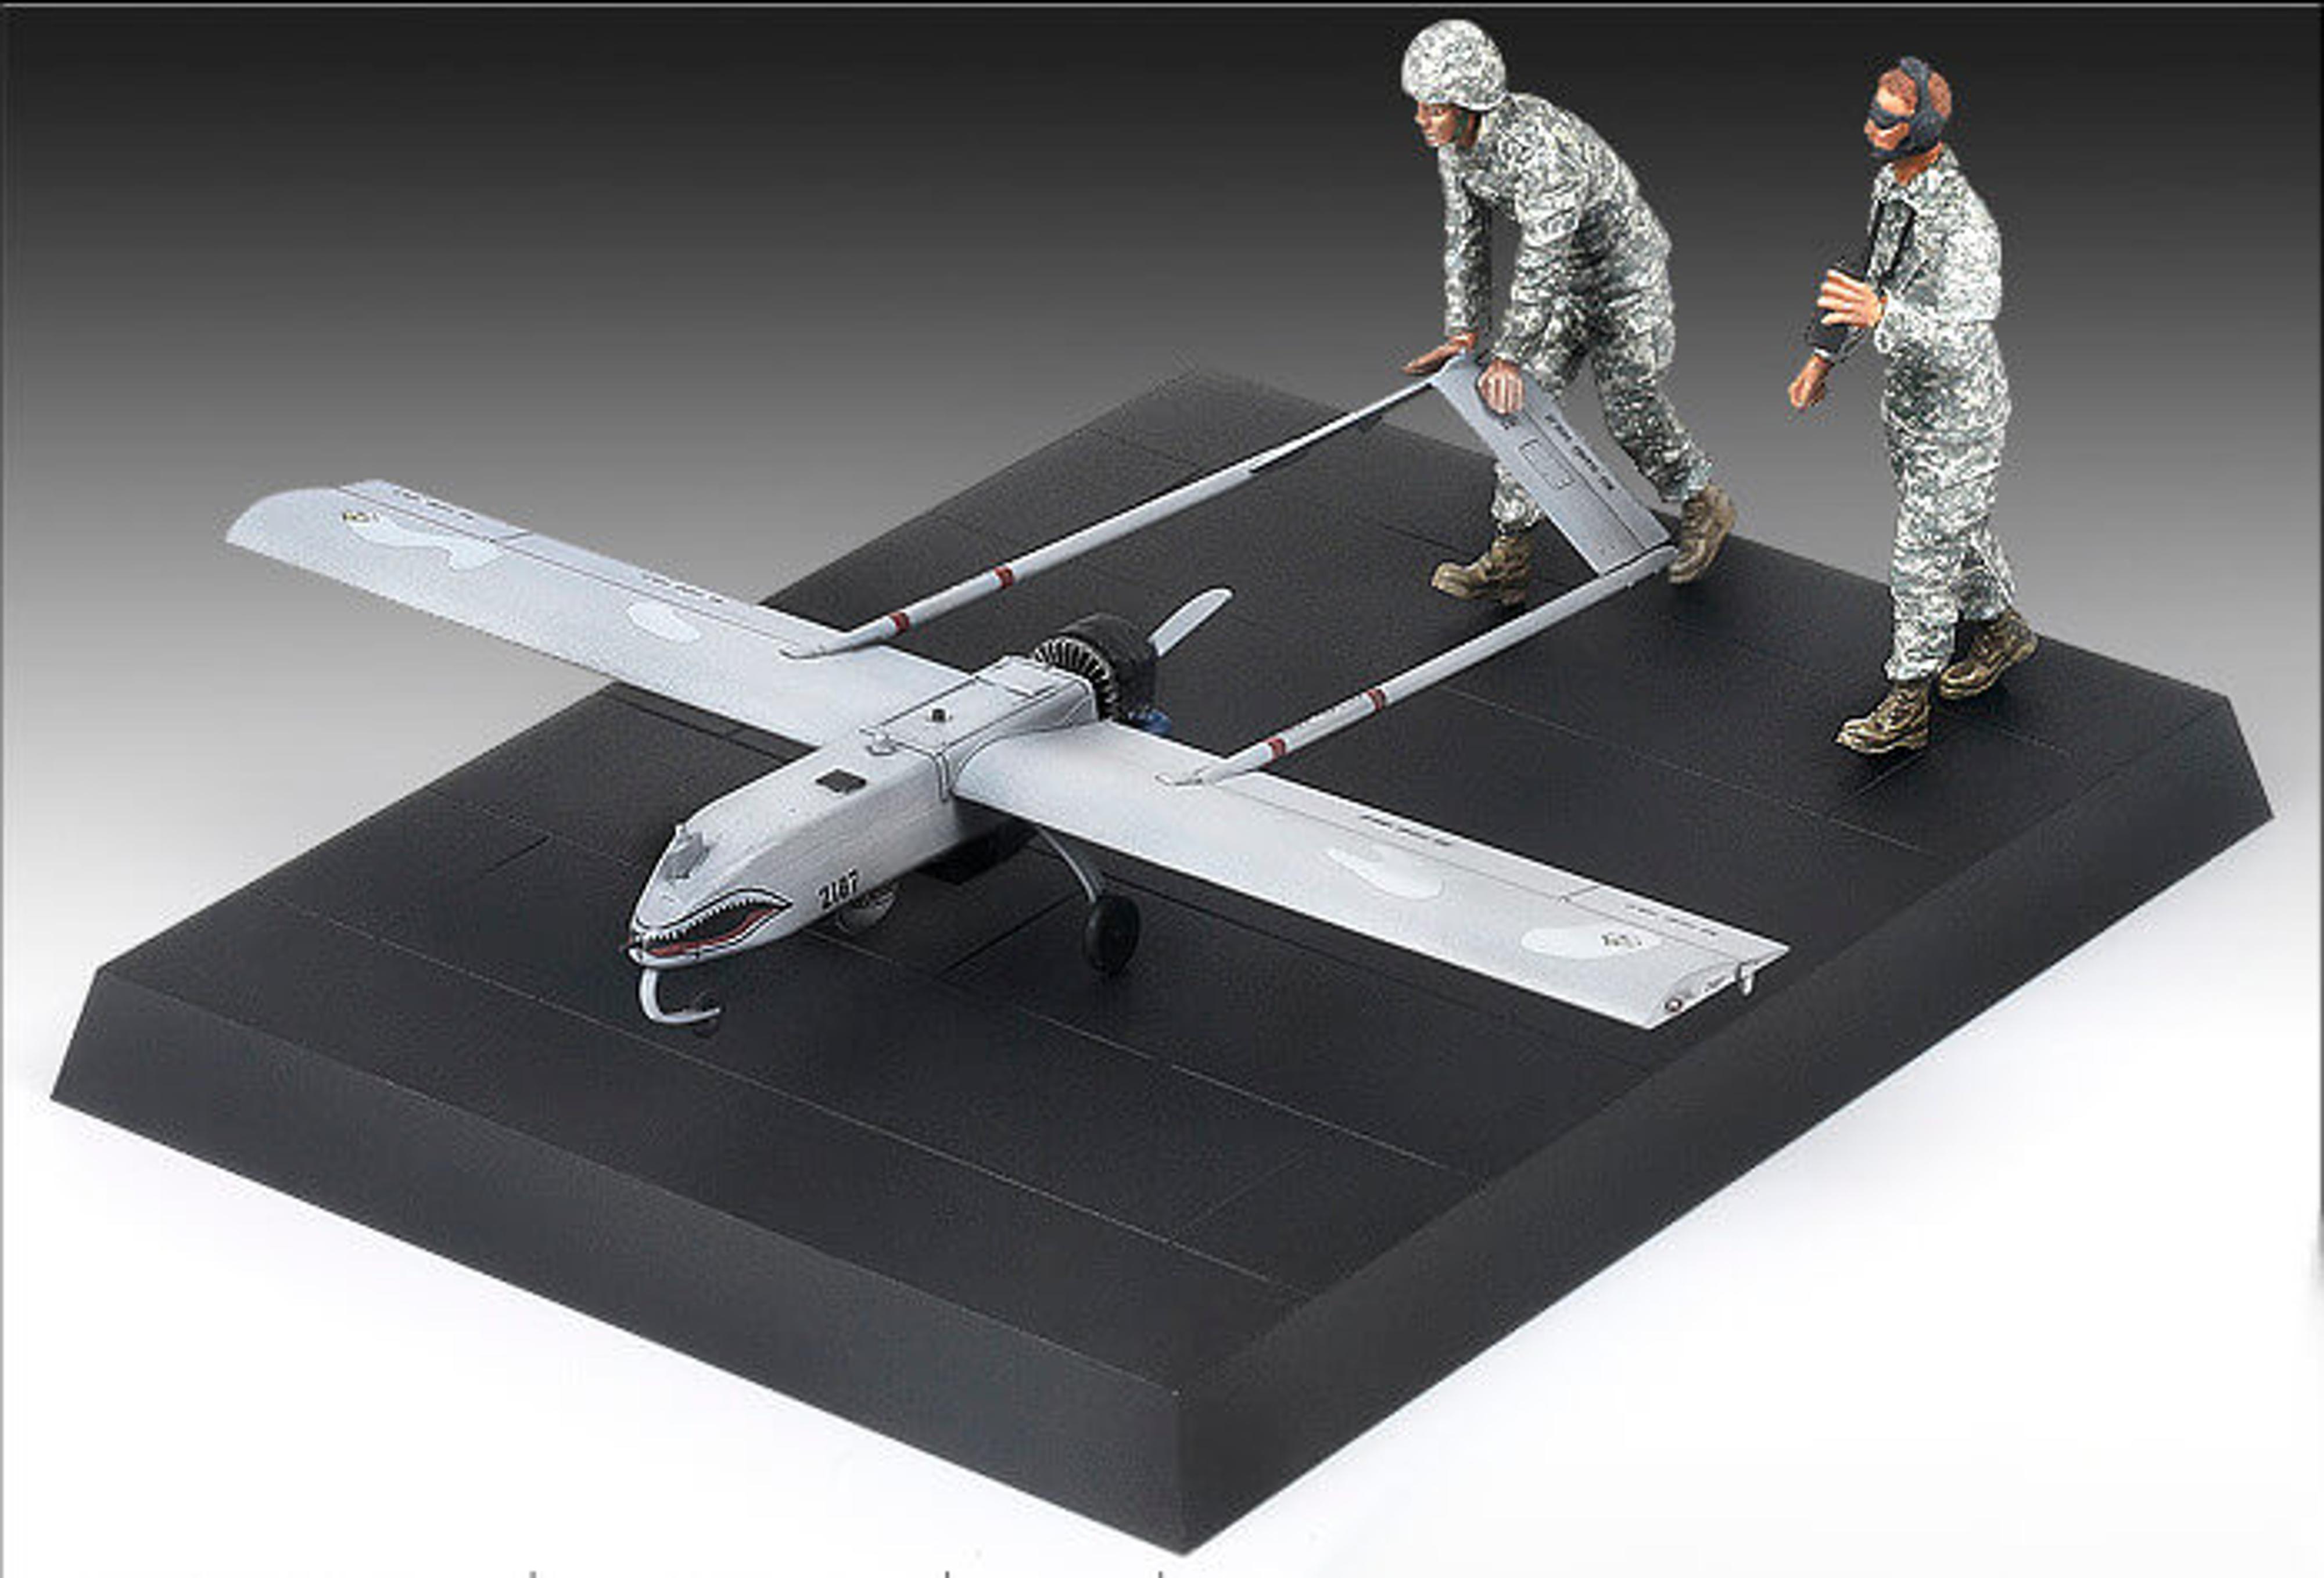 1/35 U.S. Army RQ-7B UAV Model Kit